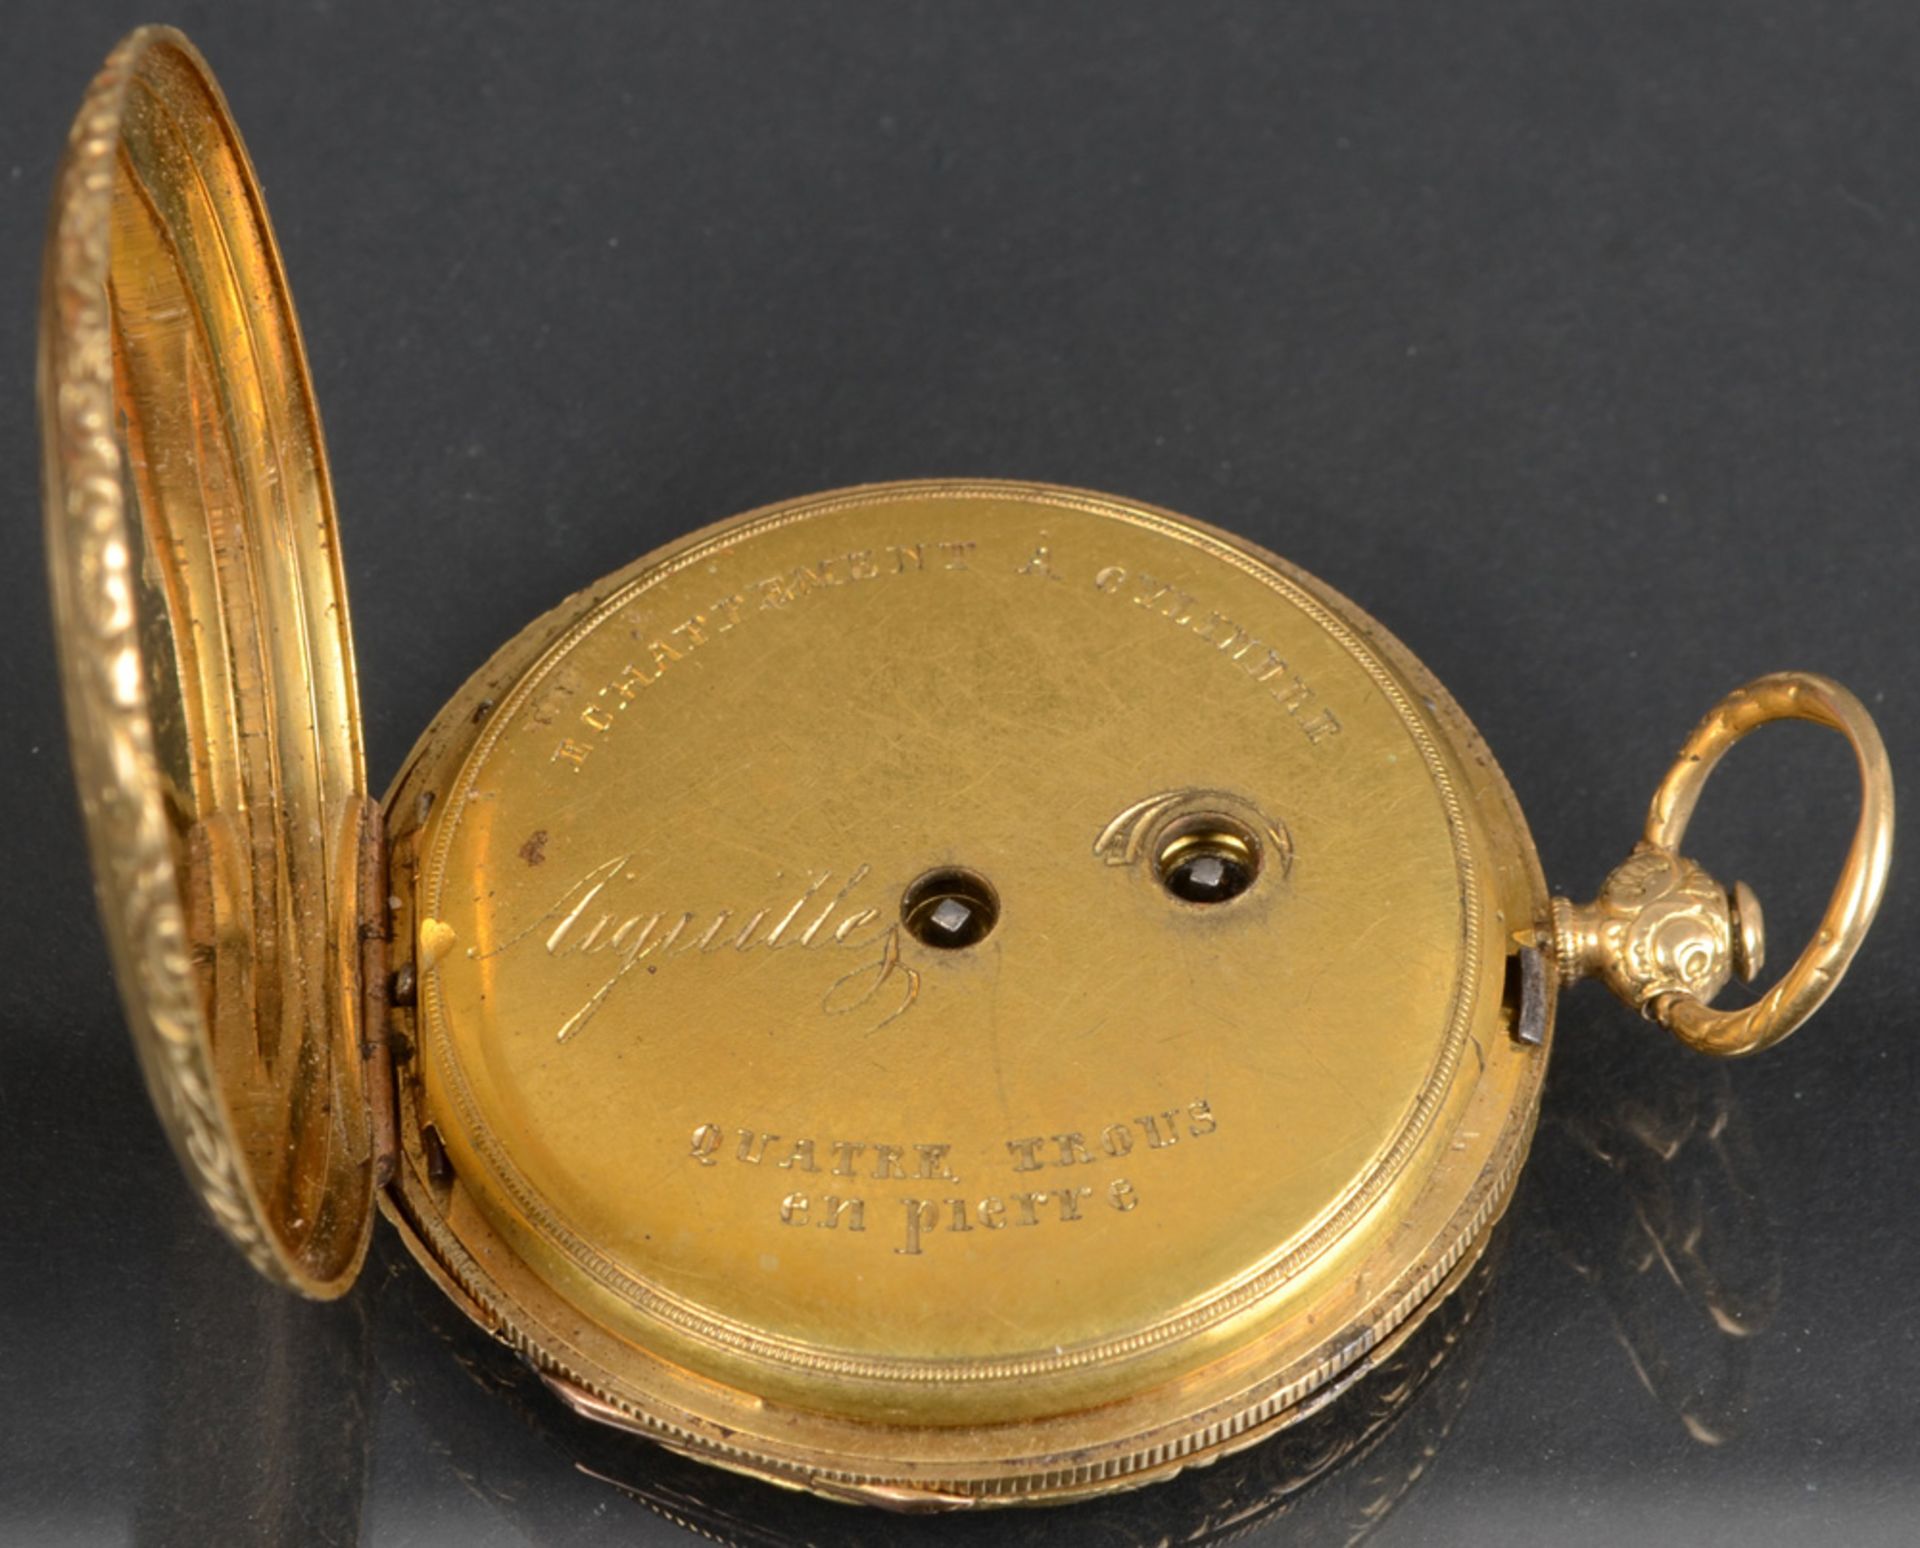 Taschenuhr, Marke „Aiguilles“, mit 18 ct Goldaußengehäuse. (Funktion ungeprüft) - Image 2 of 2